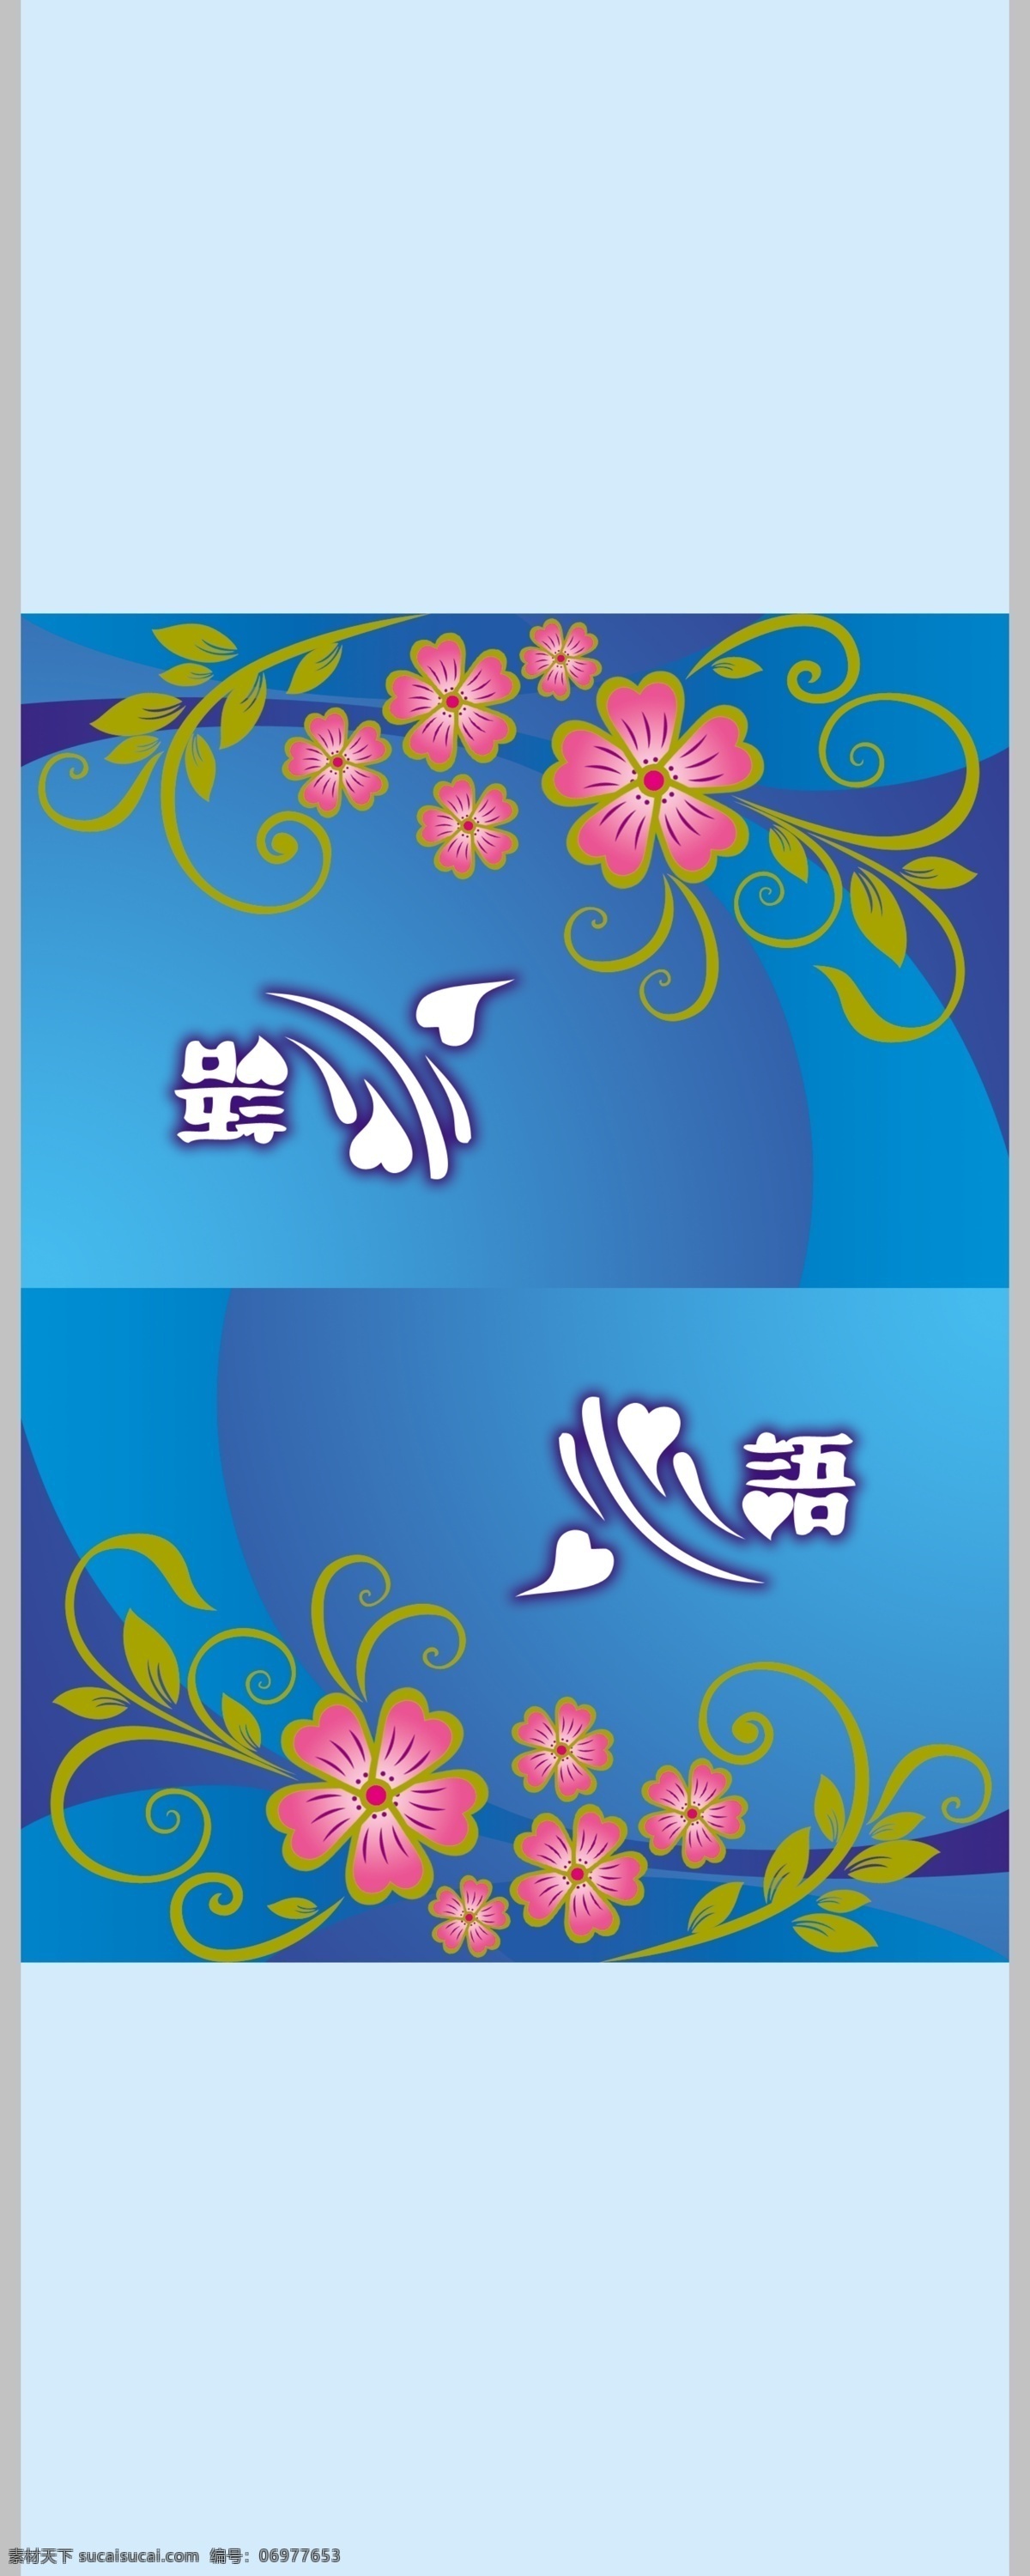 心语 钱夹纸袋 花 线条 包装 餐巾 酒店 底纹 蓝 源文件 包装设计 广告设计模板